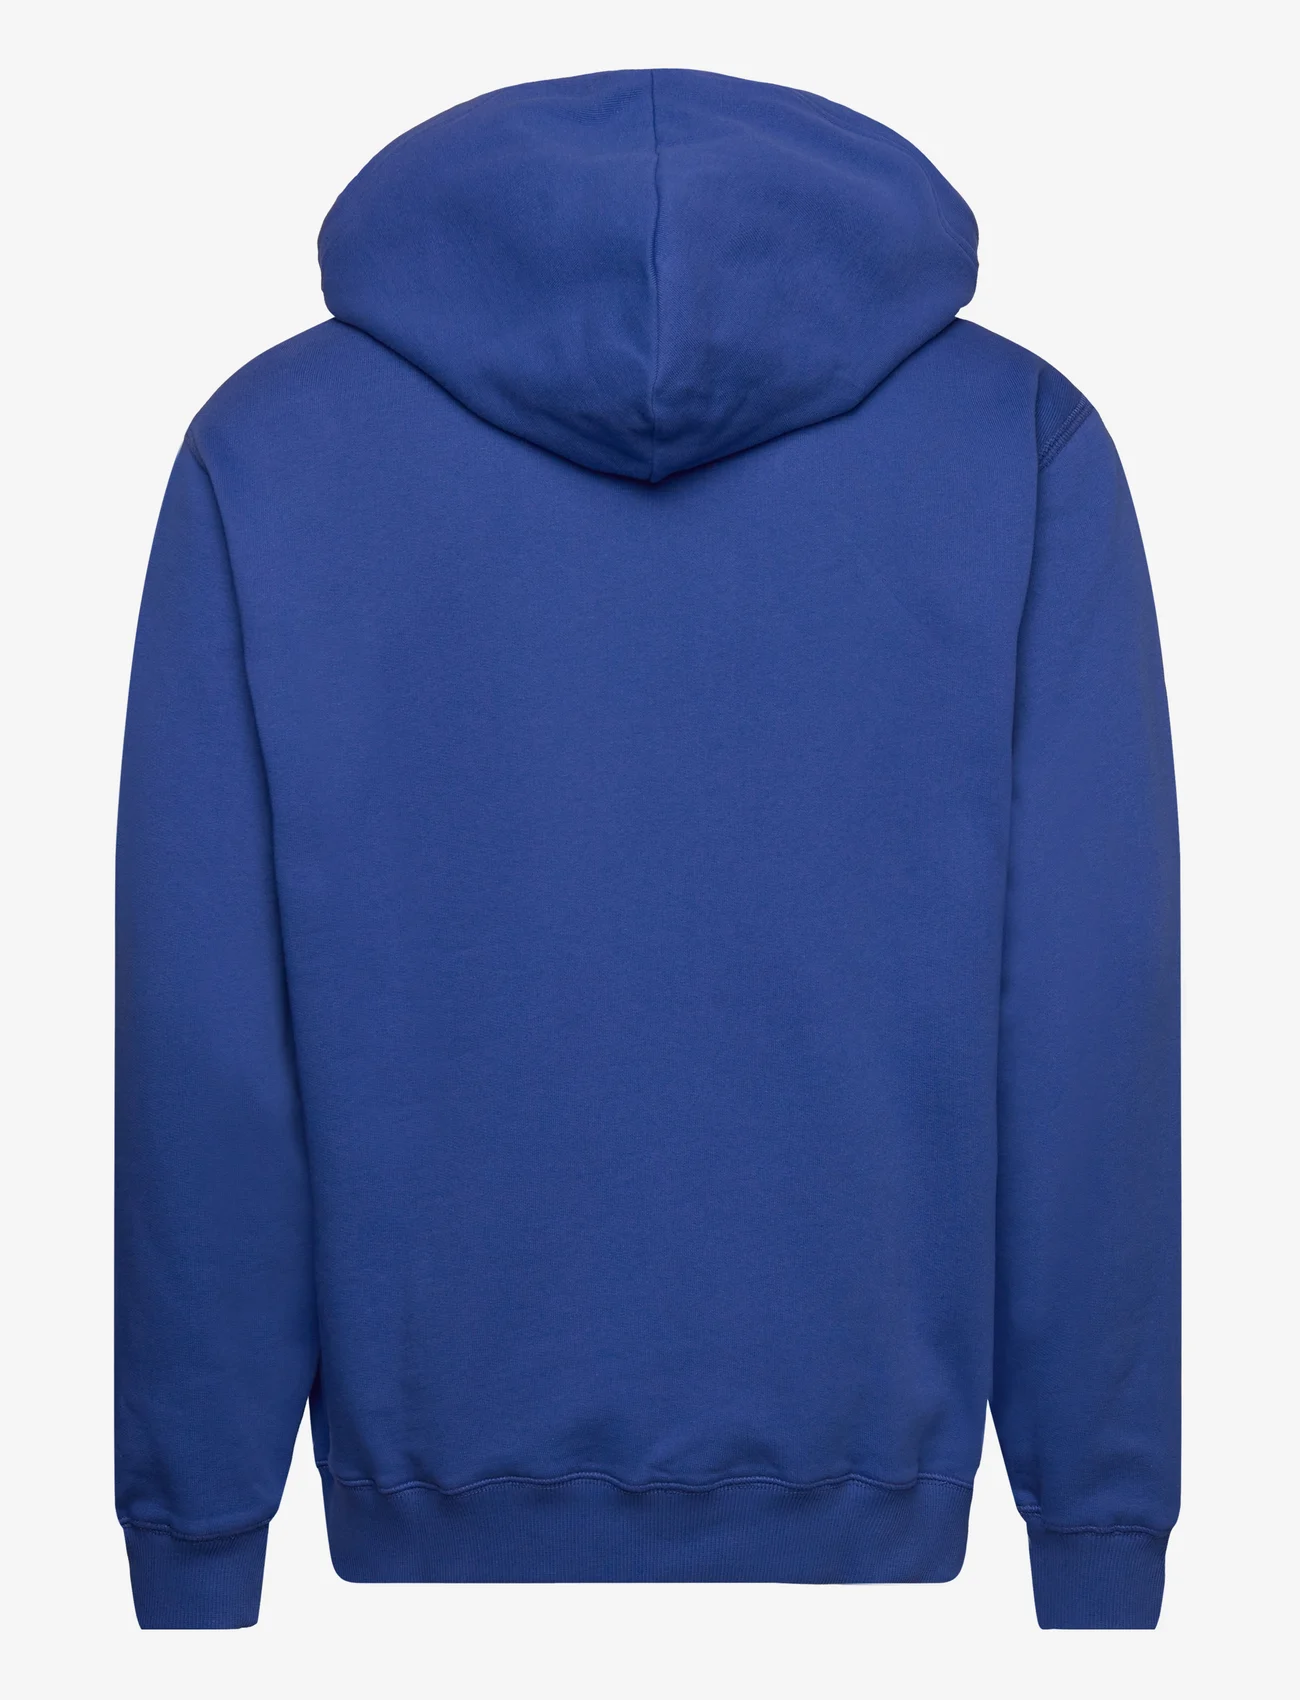 Makia - Hel Hooded Sweatshirt - sweatshirts - blue - 1